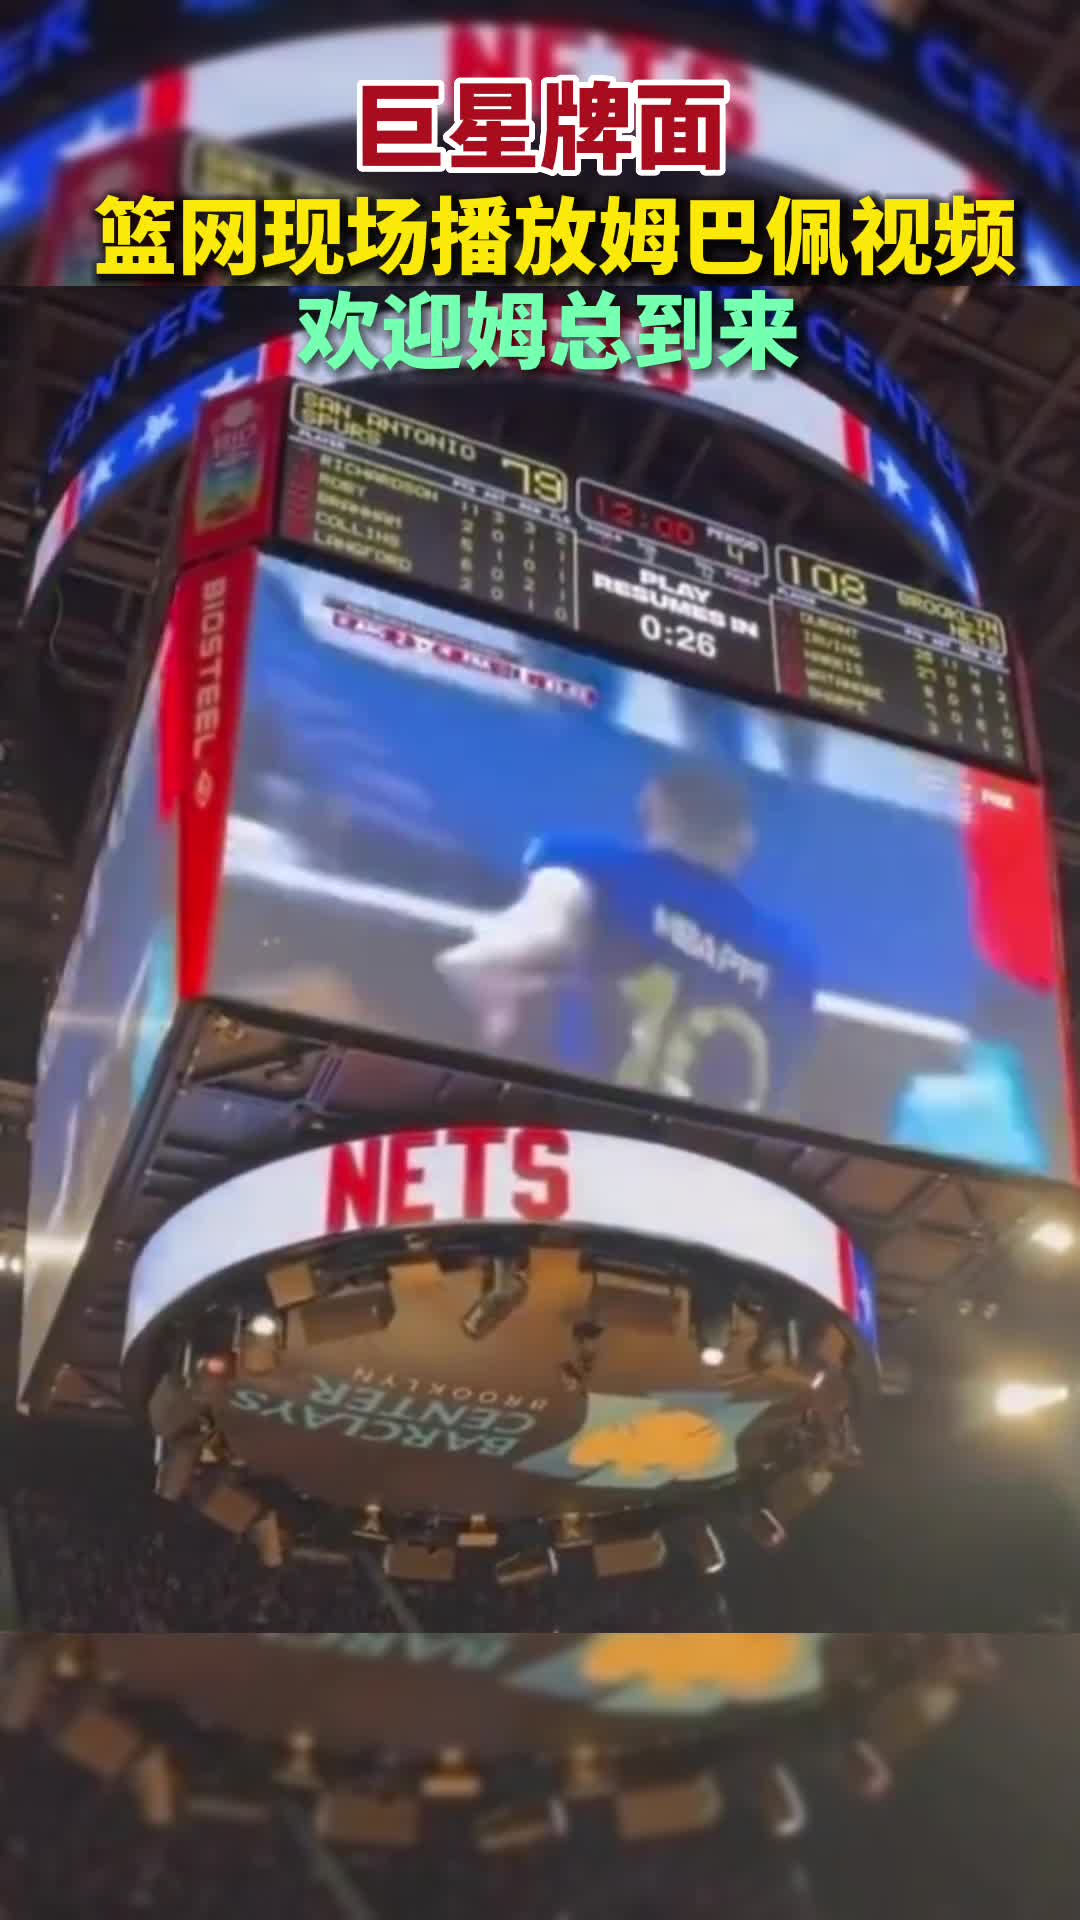 巨星牌面！NBA篮网现场播放姆巴佩视频，欢迎姆总到来